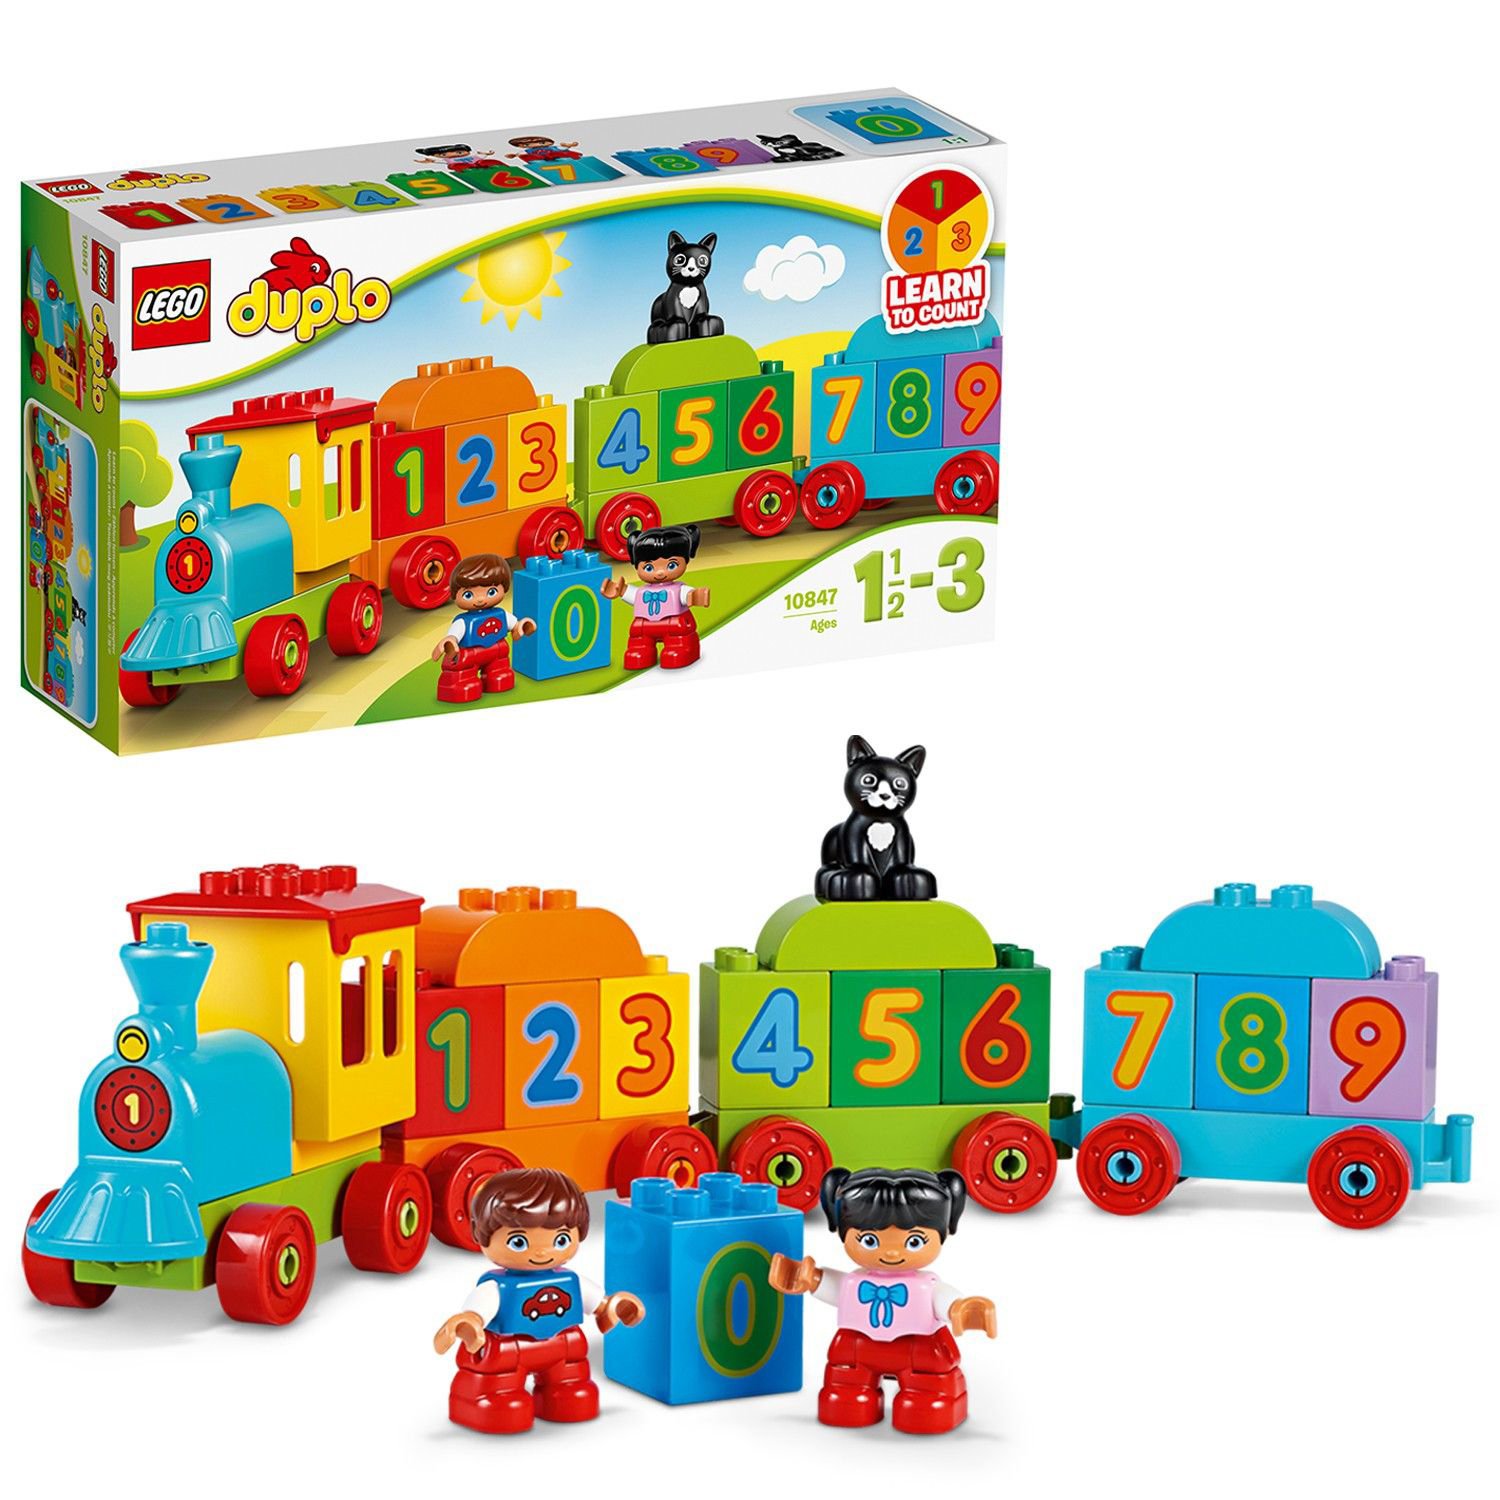 children's train sets